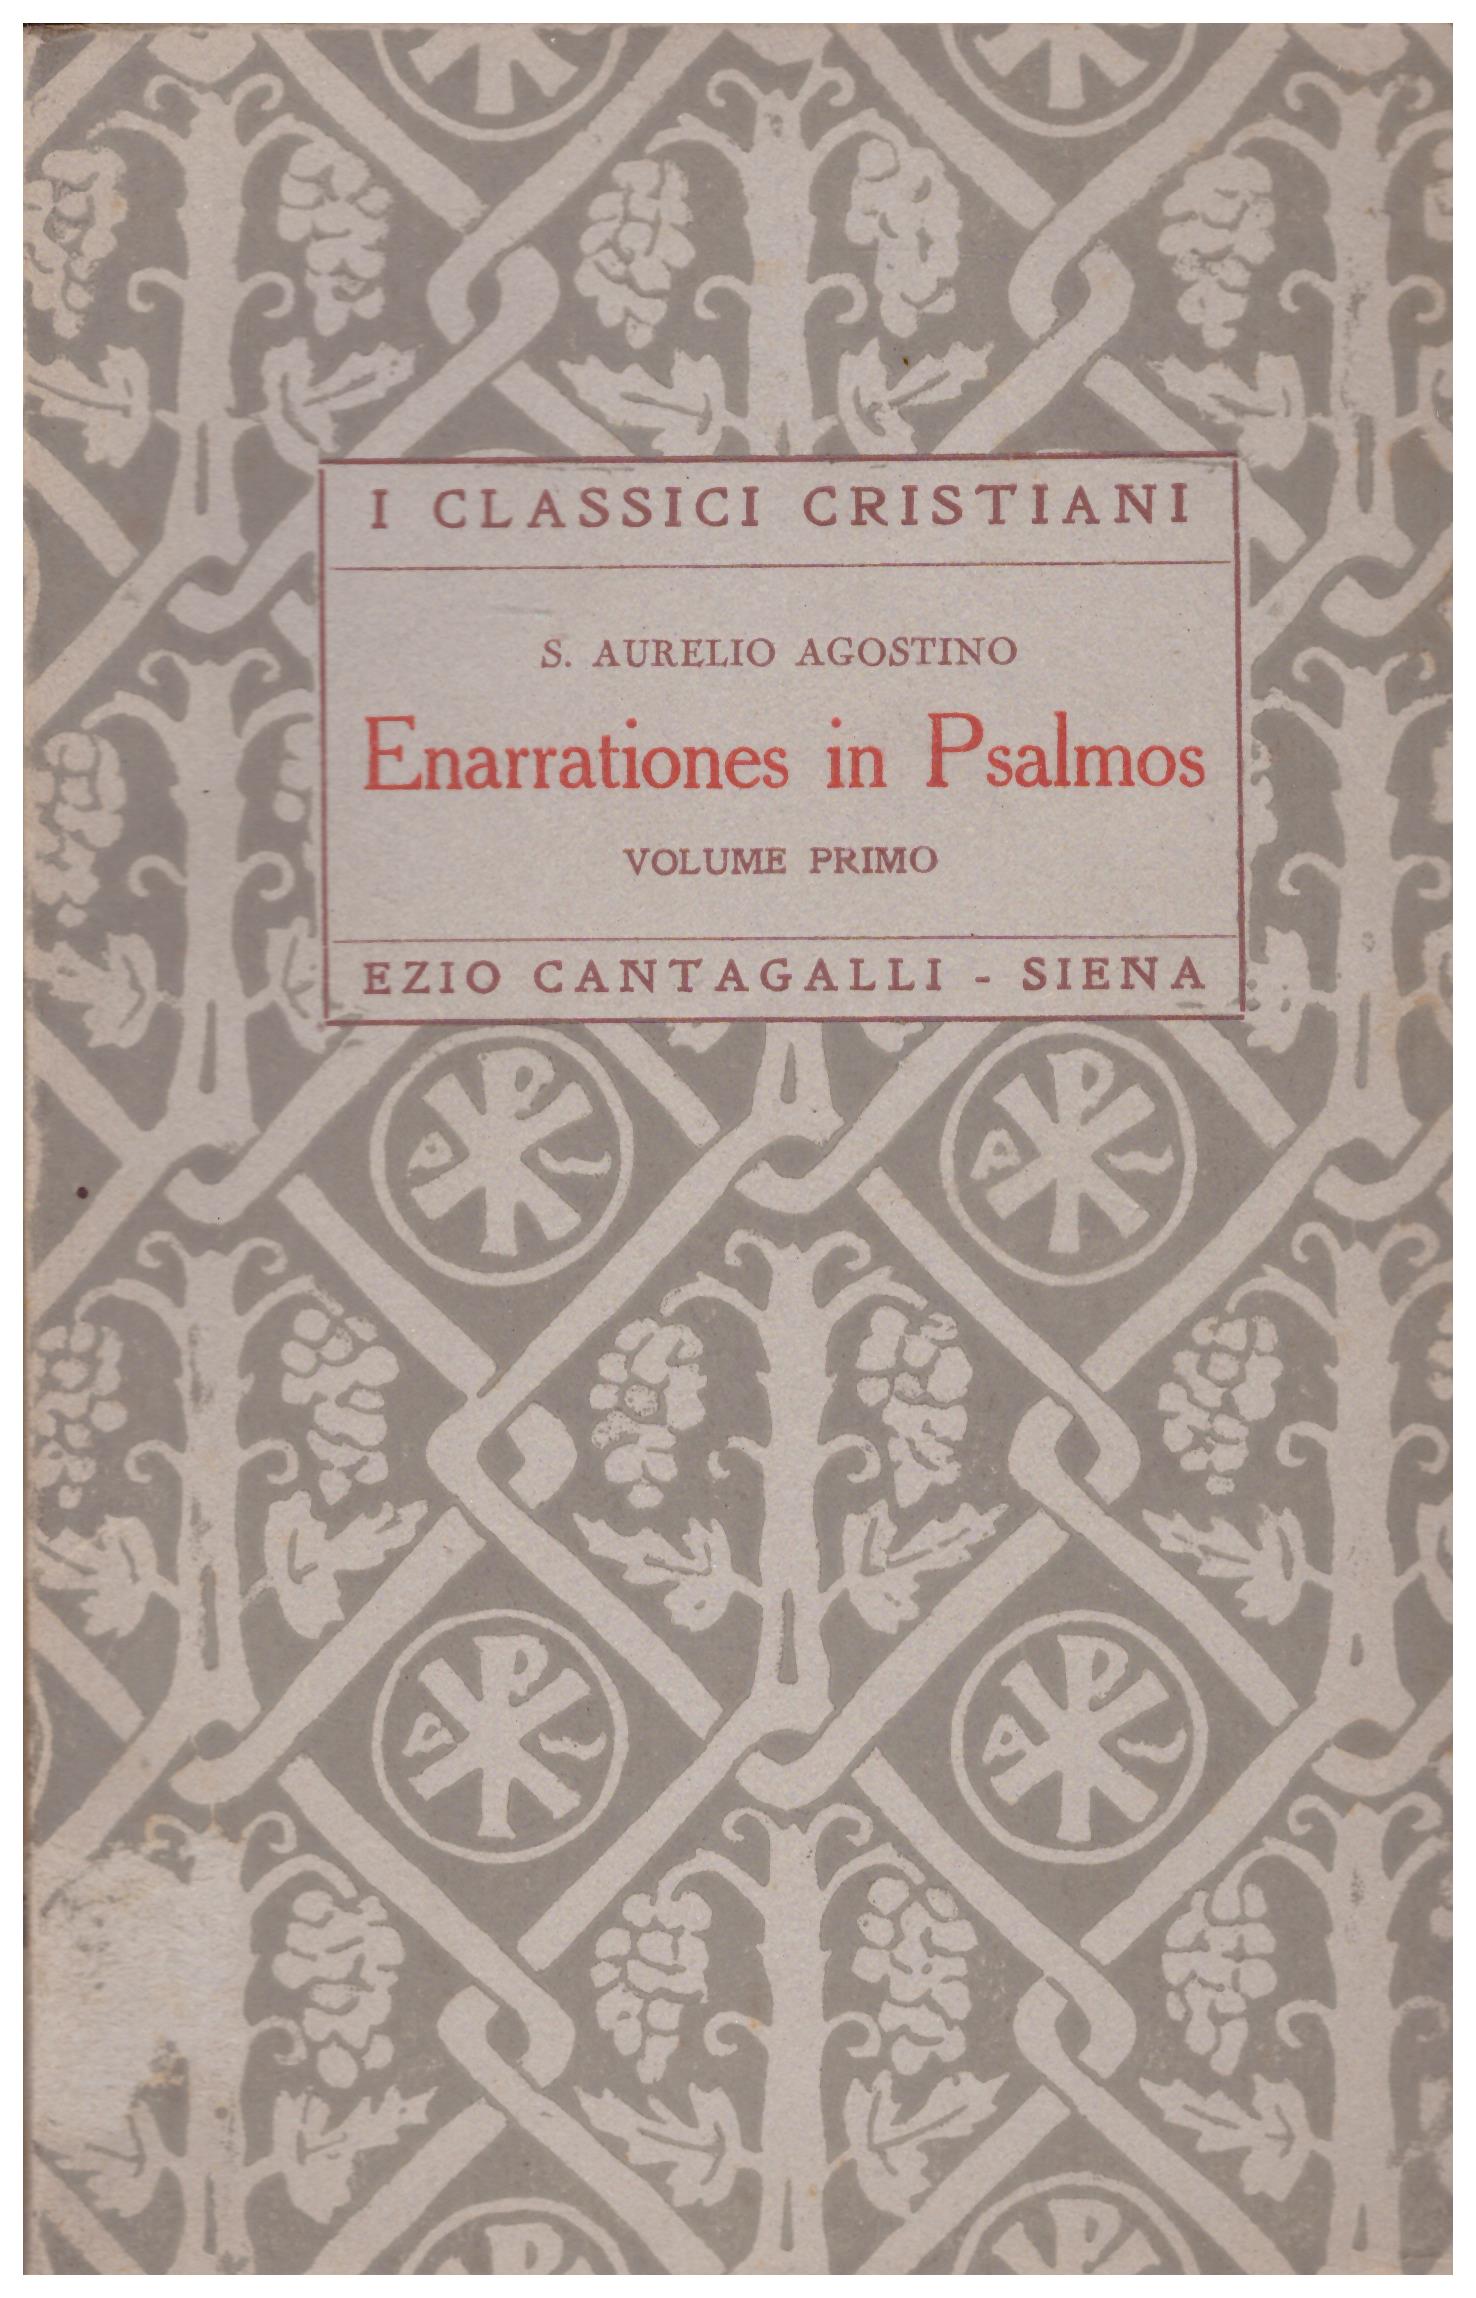 Titolo: I classici cristiani, Enarrationes in Psalmos, volume primo Autore : S. Aurelio Agostino Editore: Ezio Cantagalli, Siena